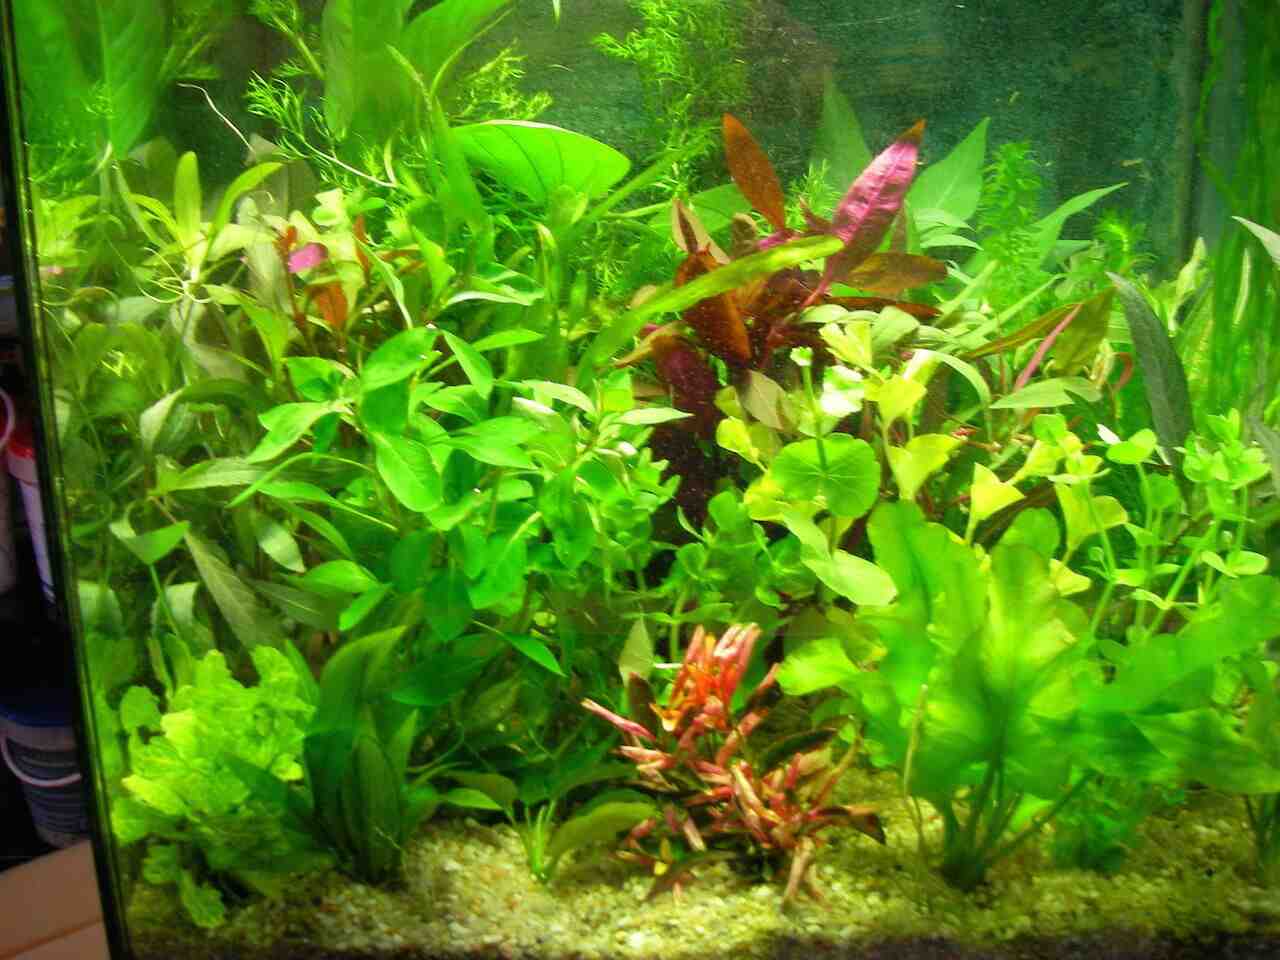 Comment poussent les plantes d'aquarium?